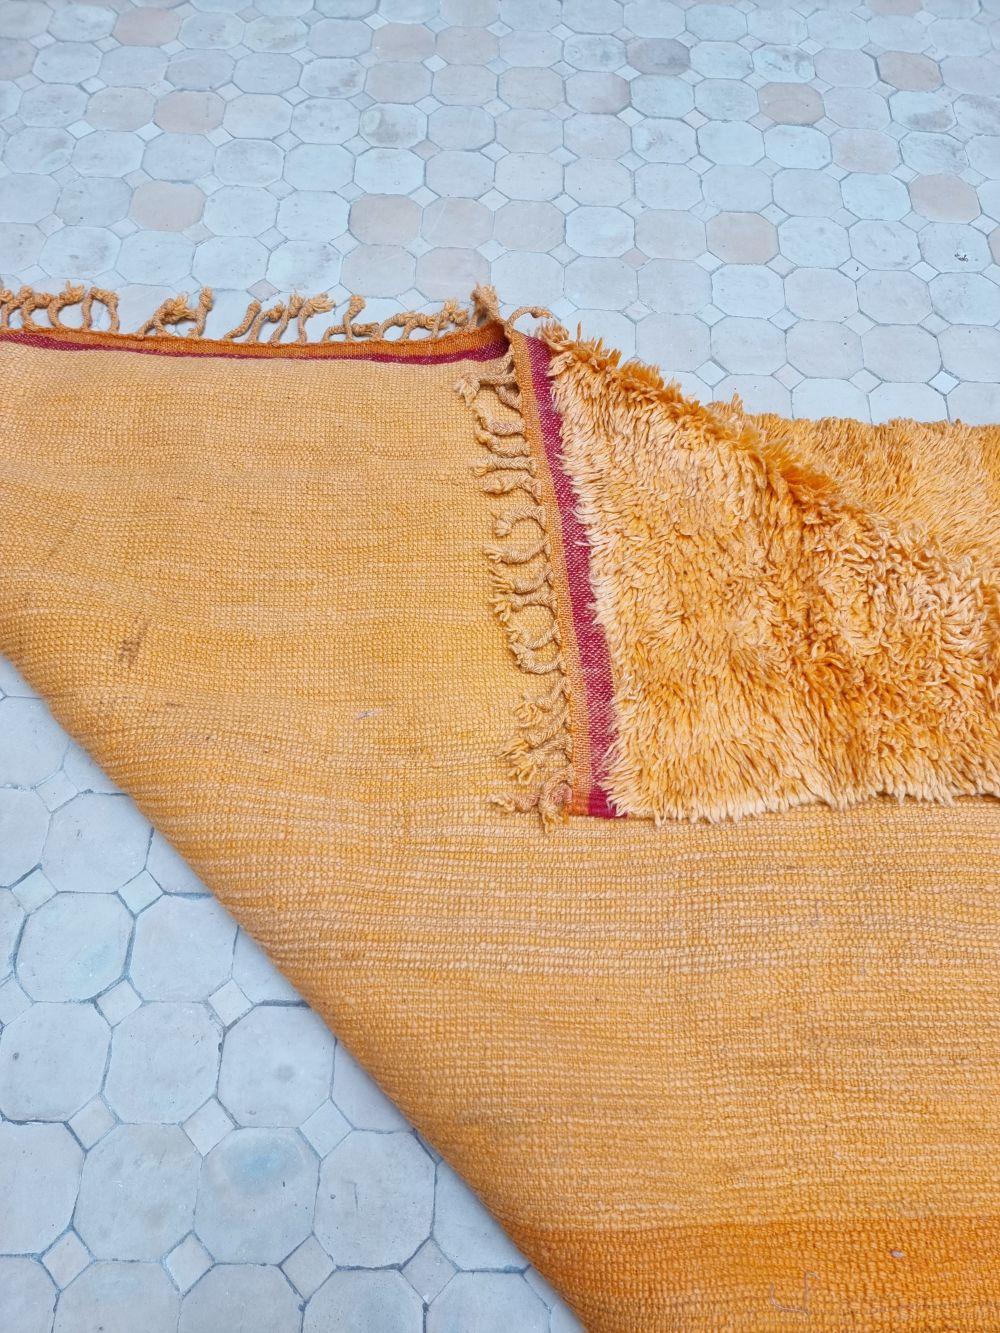 Marokkolainen vintage-matto "Sahrami" 260x160cm